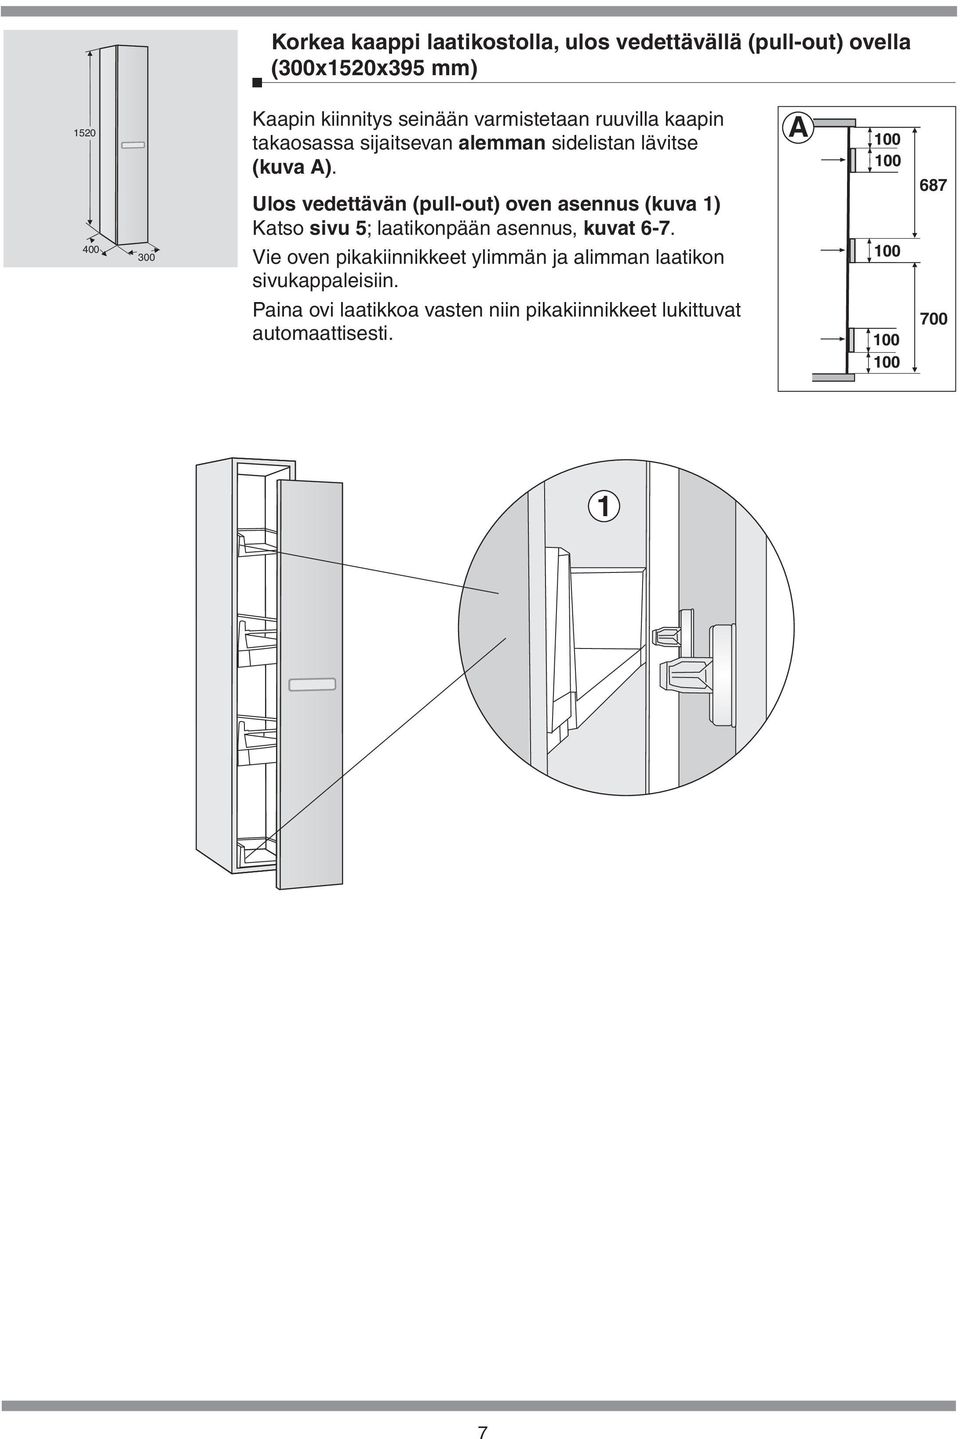 (pull-out) oven asennus (kuva 1) Katso sivu 5; laatikonpään asennus, kuvat 6-7 Vie oven pikakiinnikkeet ylimmän